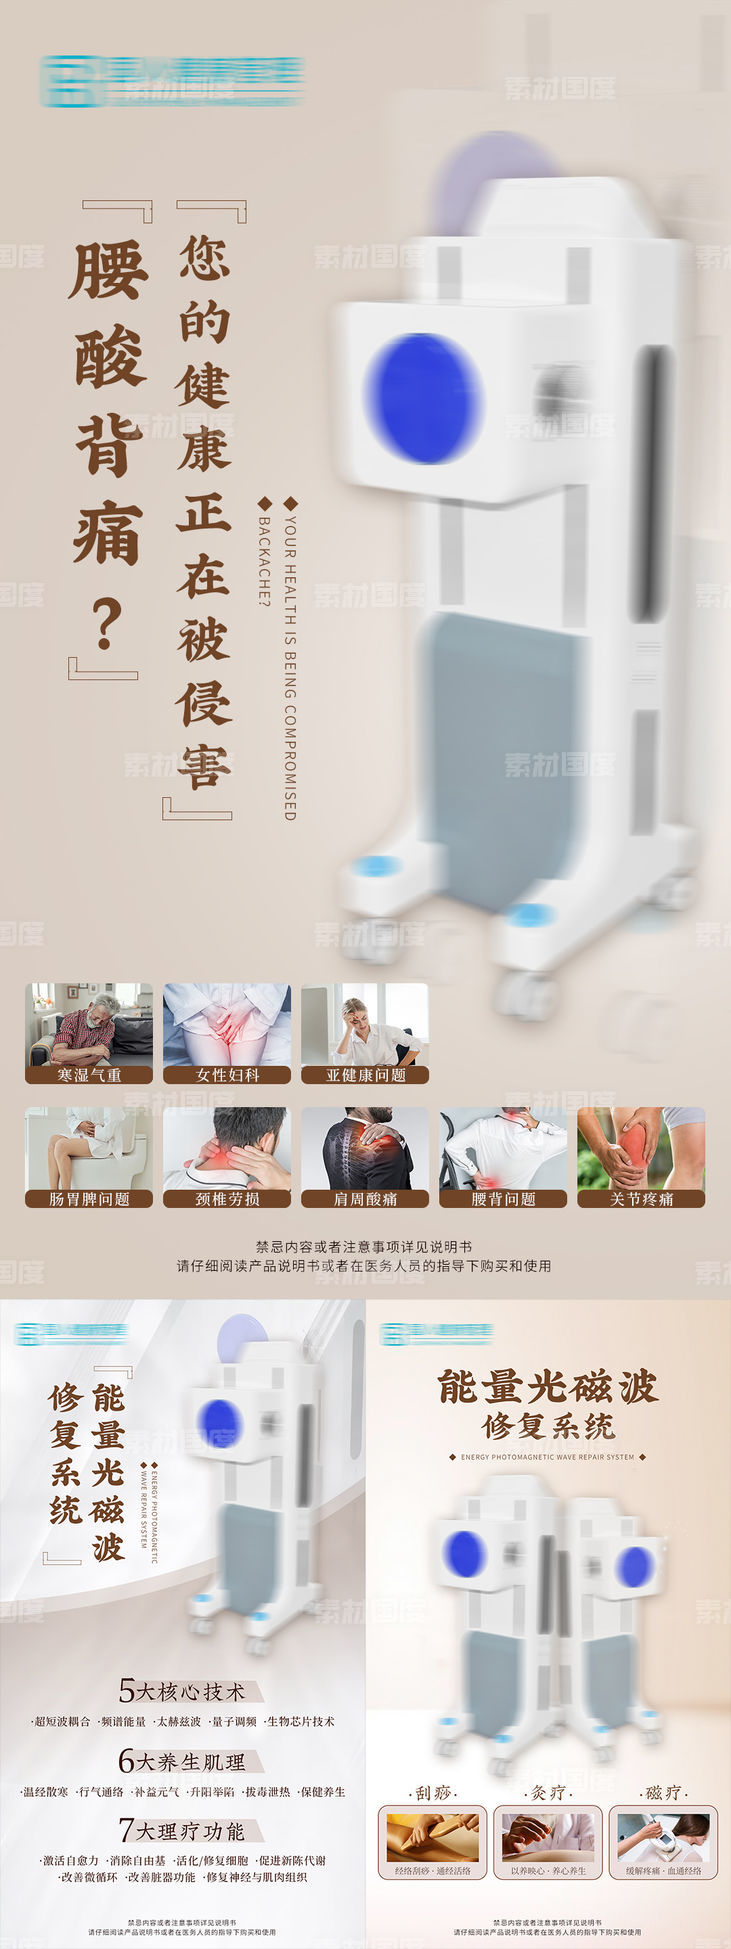 中式养生仪器海报